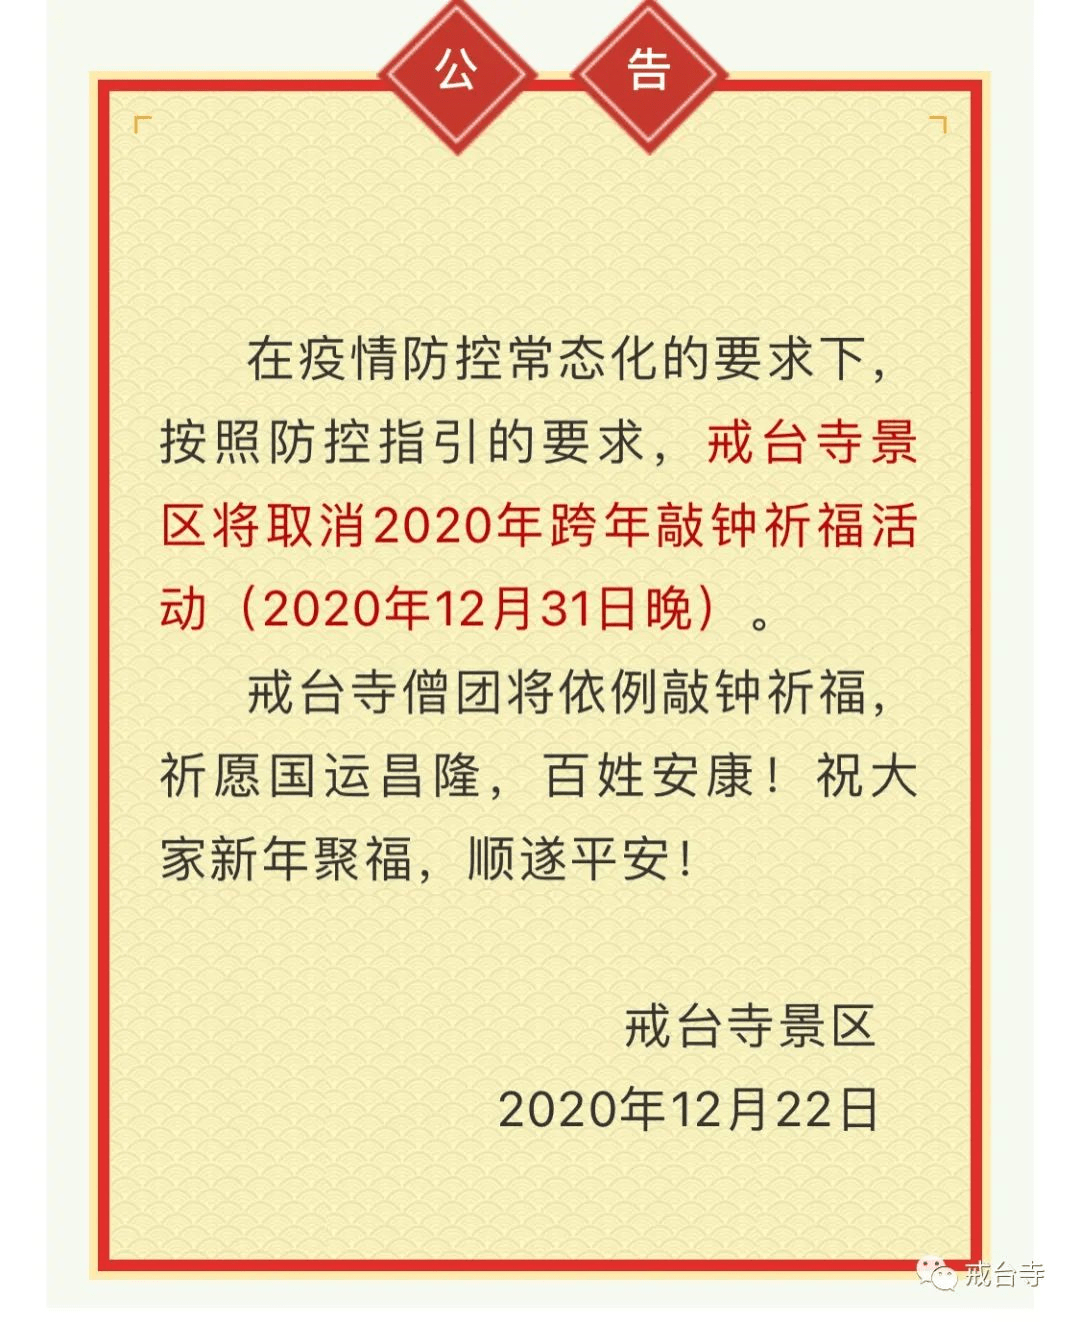 北京戒台寺景区取消2020年跨年敲钟祈福活动